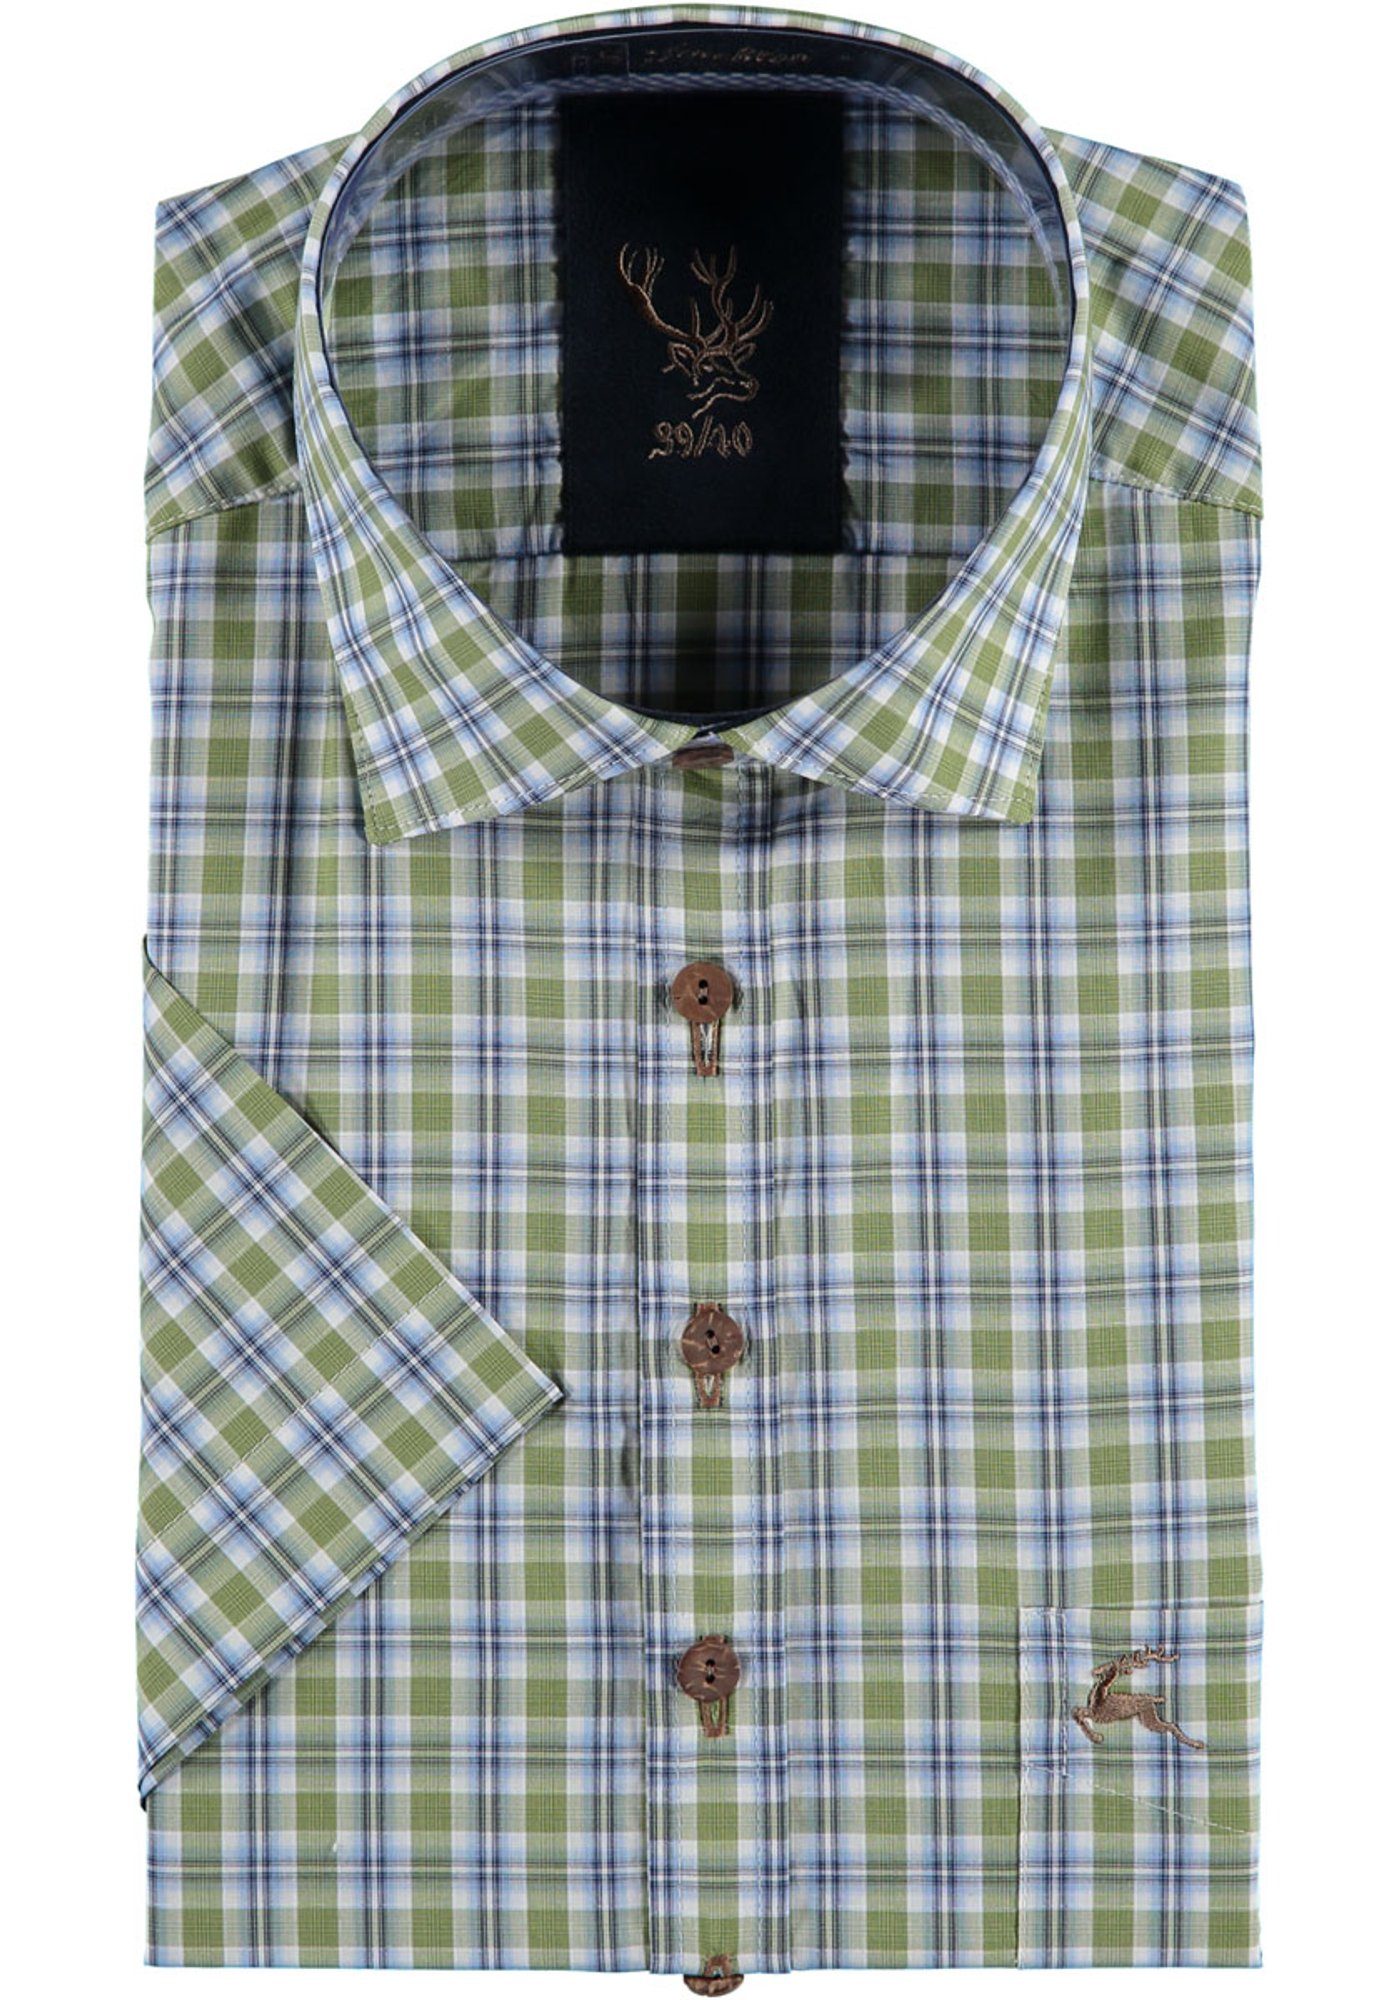 OS-Trachten Trachtenhemd Azecu Kurzarmhemd mit Hirsch-Stickerei auf der Brusttasche khaki/schlamm